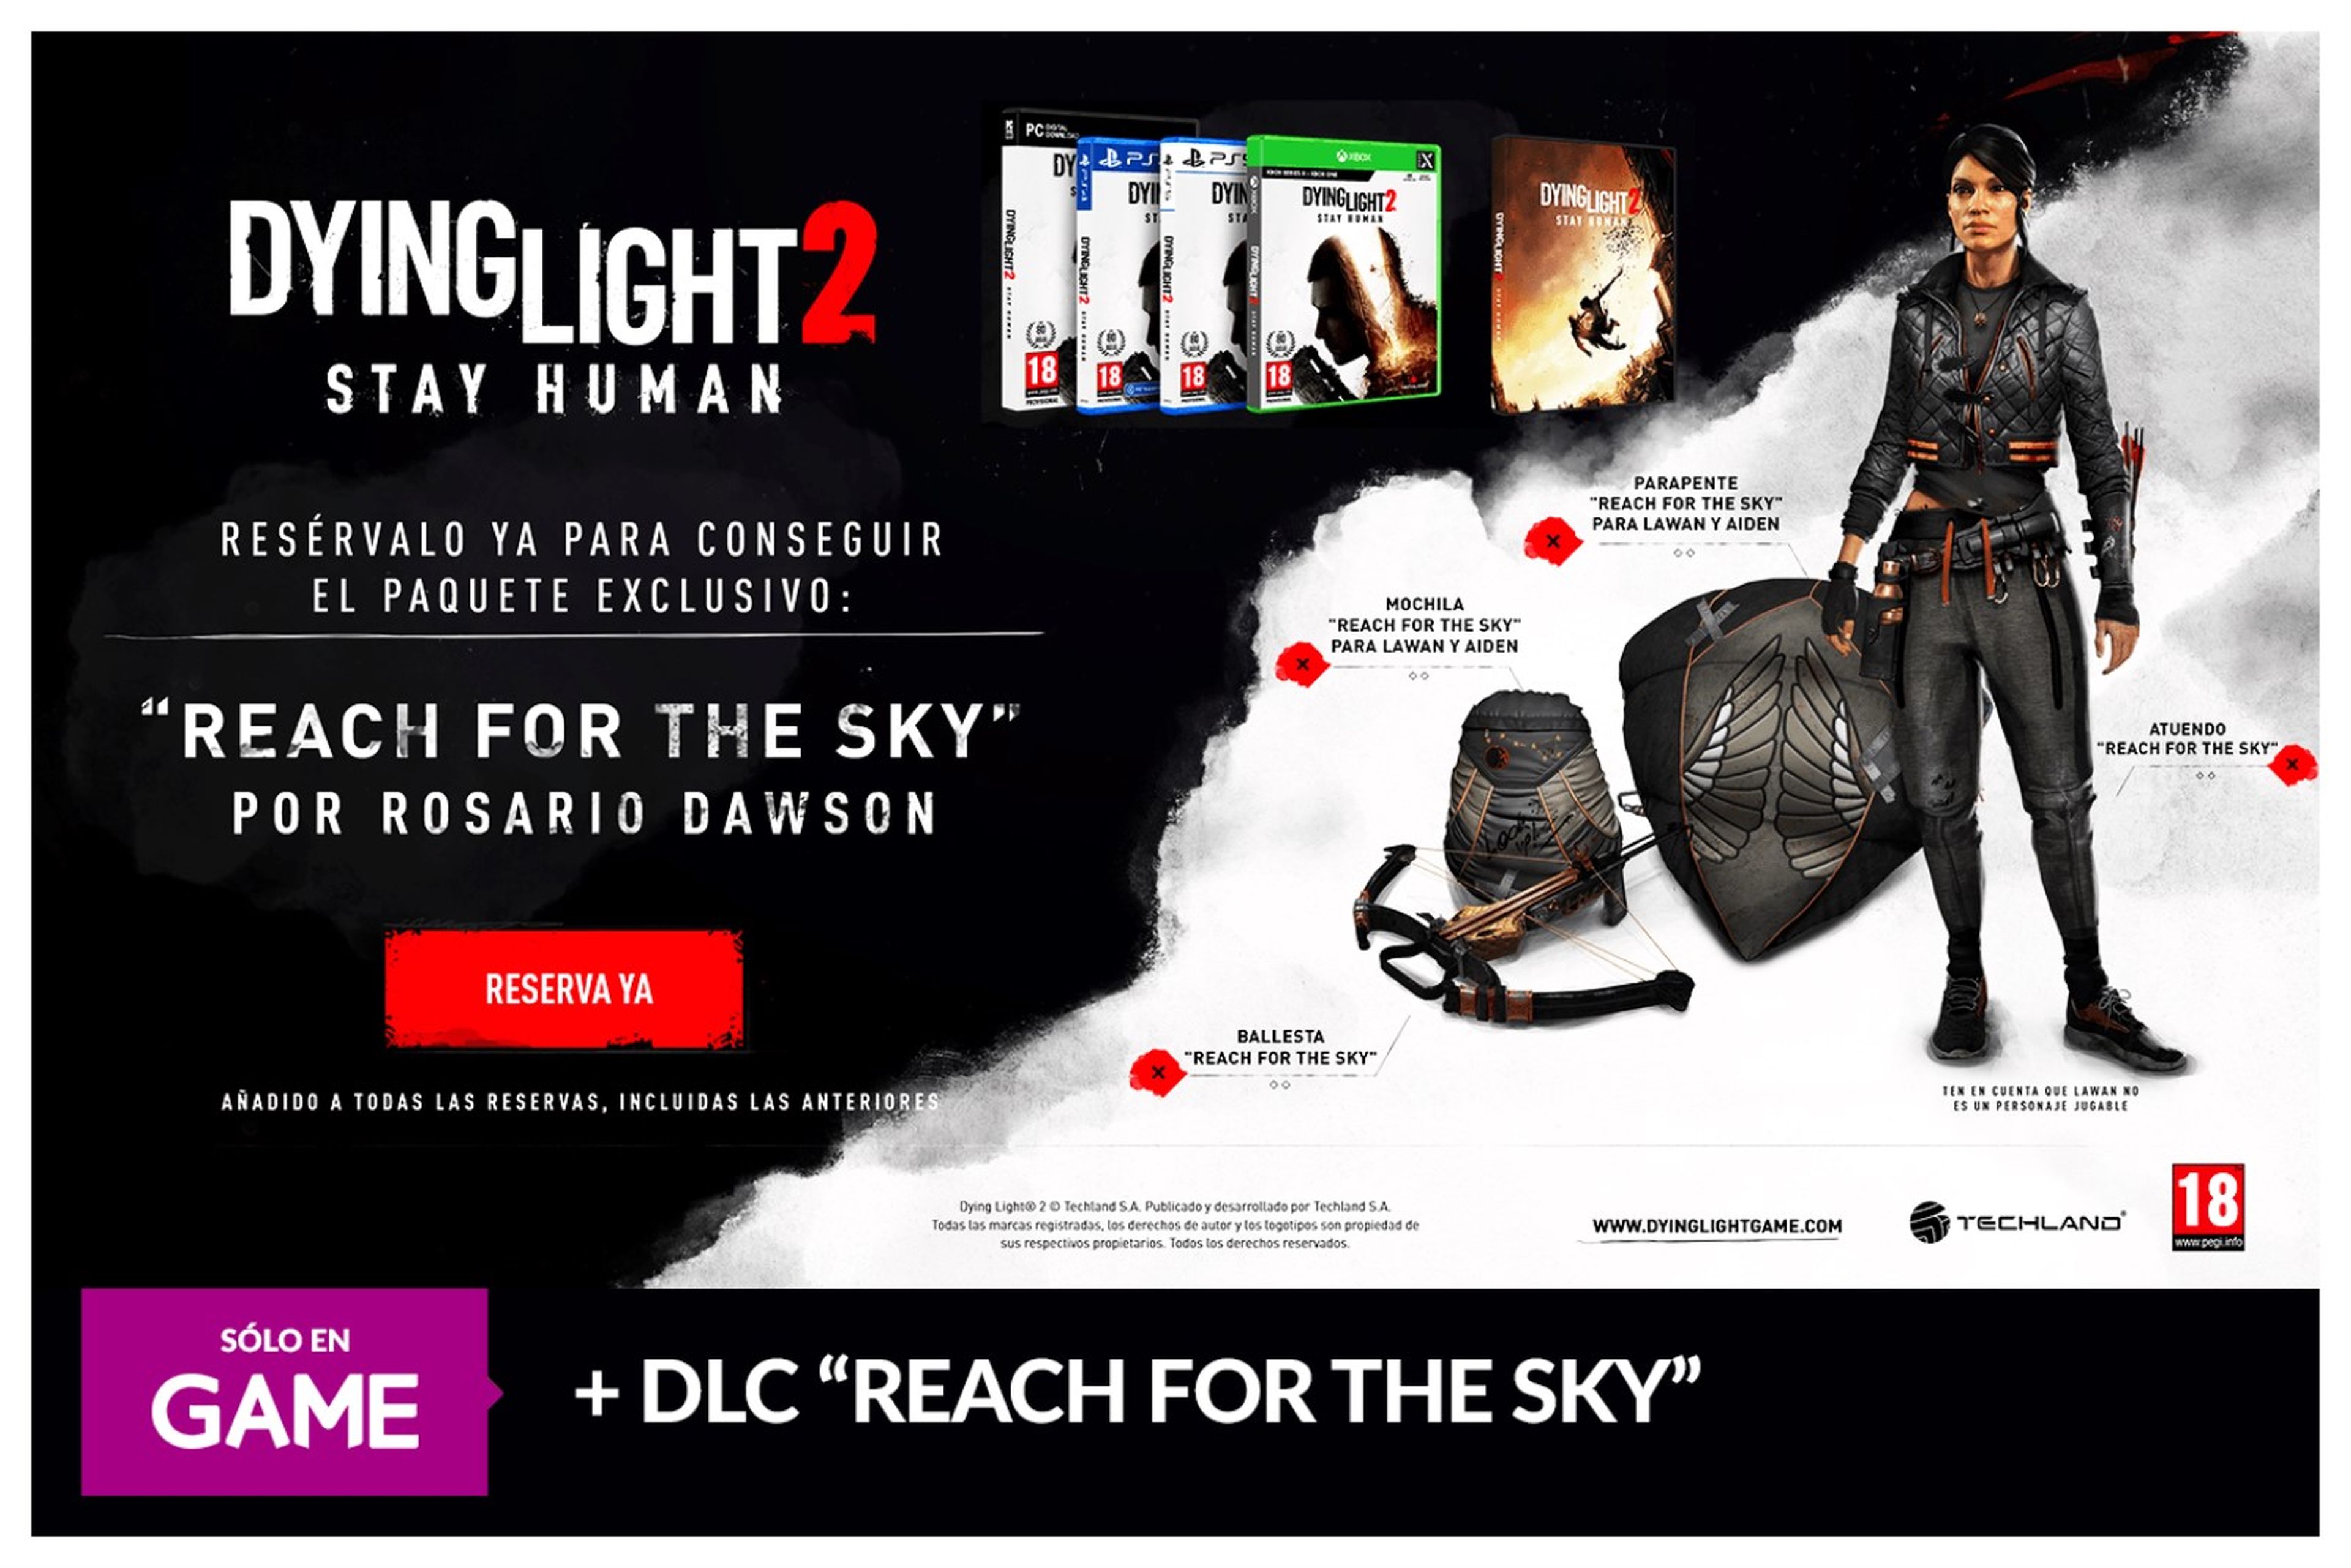 Dying Light 2 en GAME con dos DLC de regalo